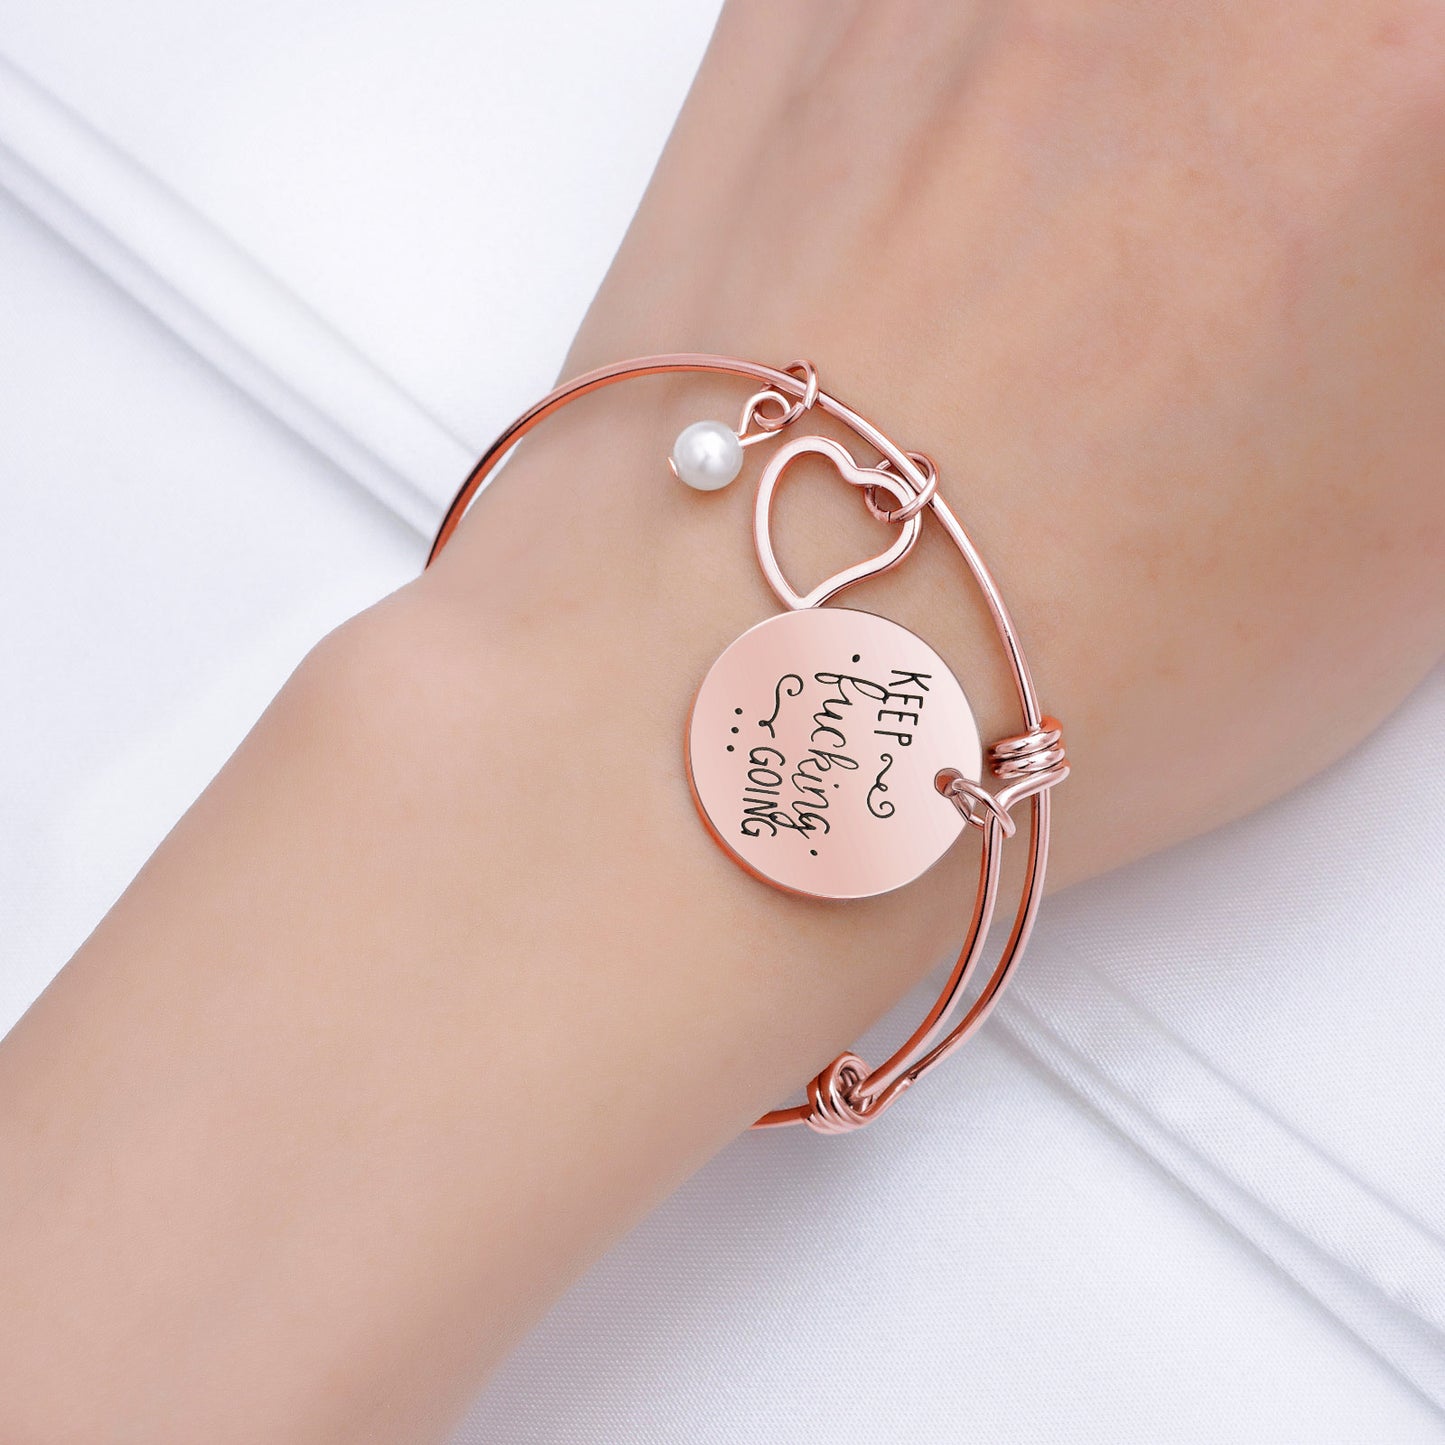 custom jewelry bracelet charms